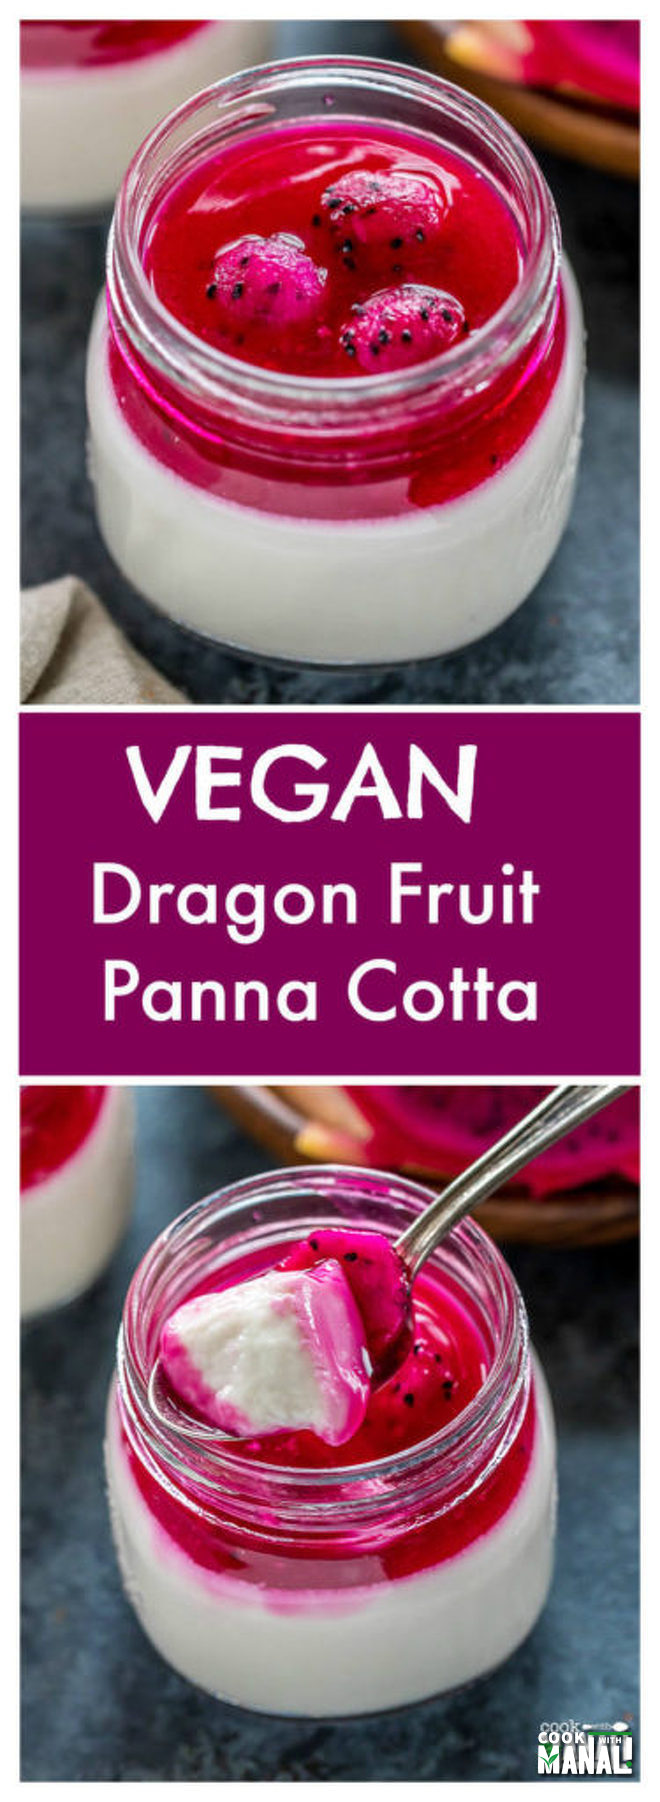 Vegan Dragon Fruit Panna Cotta - Cook With Manali